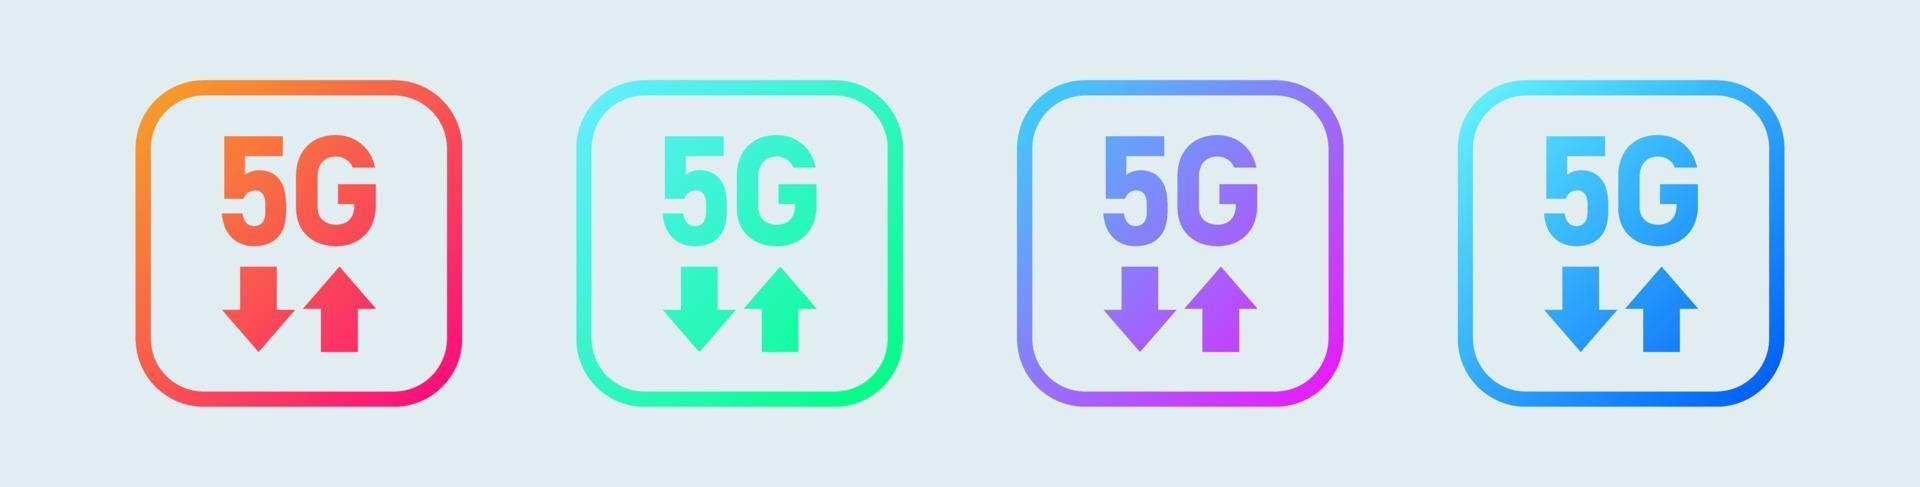 Concepto de logotipo de icono de tecnología de red 5g. símbolo de internet inalámbrico de quinta generación. vector